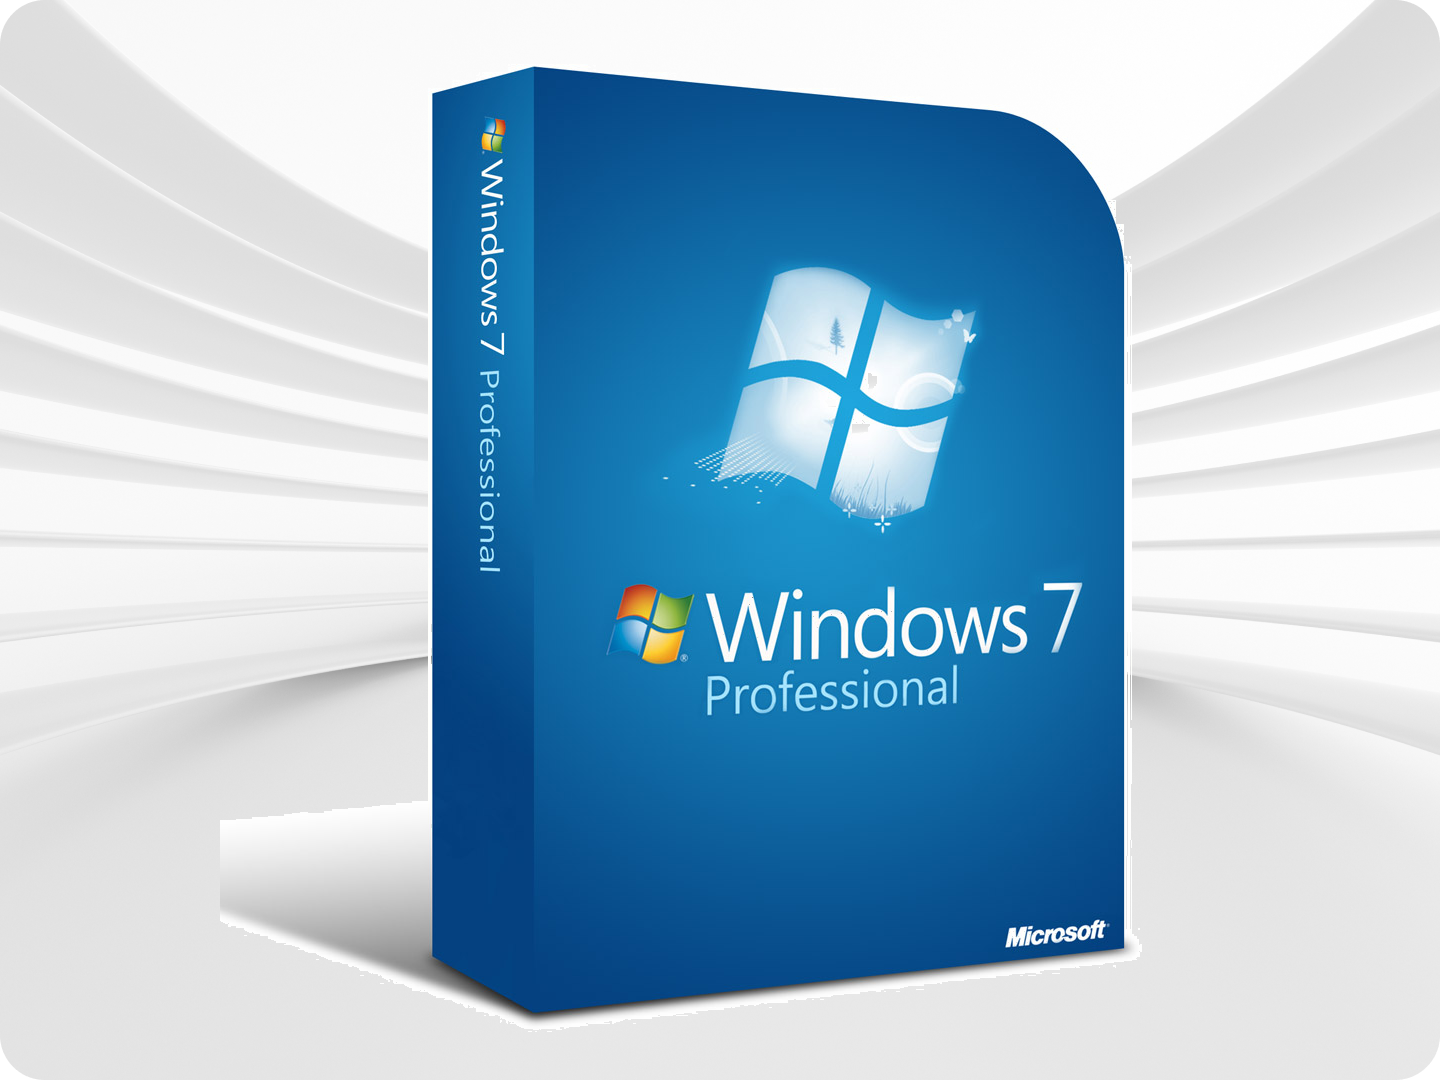 Microsoft Windows 7 Professional / Цифровой ключ / Лицензия / Русский язык.